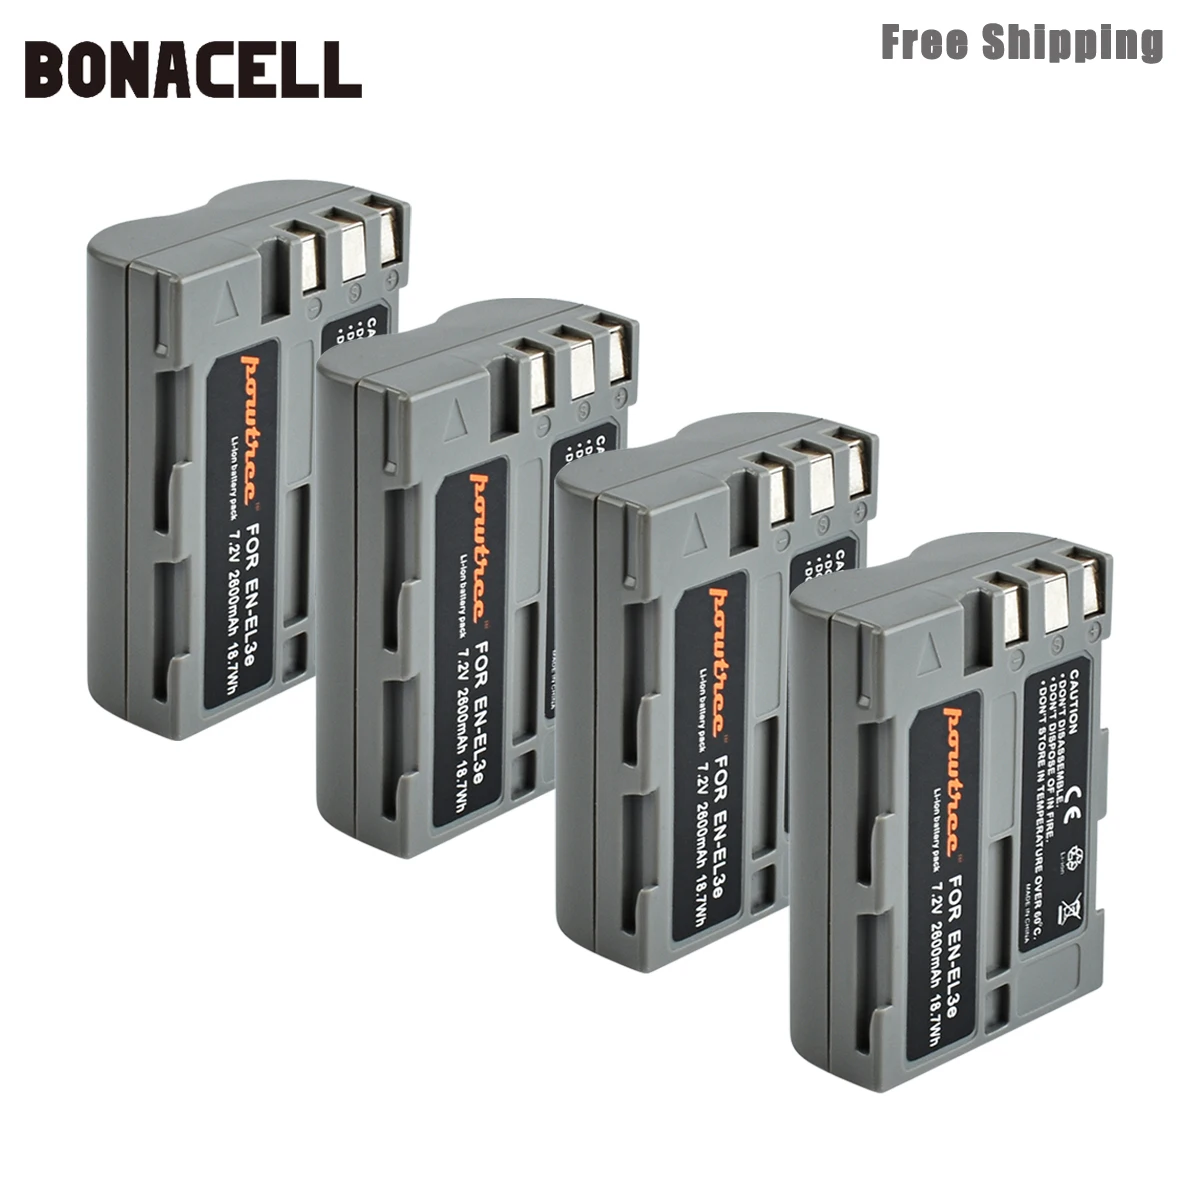 

Bonacell 2600mAh EN-EL3e EN EL3e EL3a ENEL3e Digital Camera Battery for Nikon D300S D300 D100 D200 D700 D70S D80 D90 D50 L50